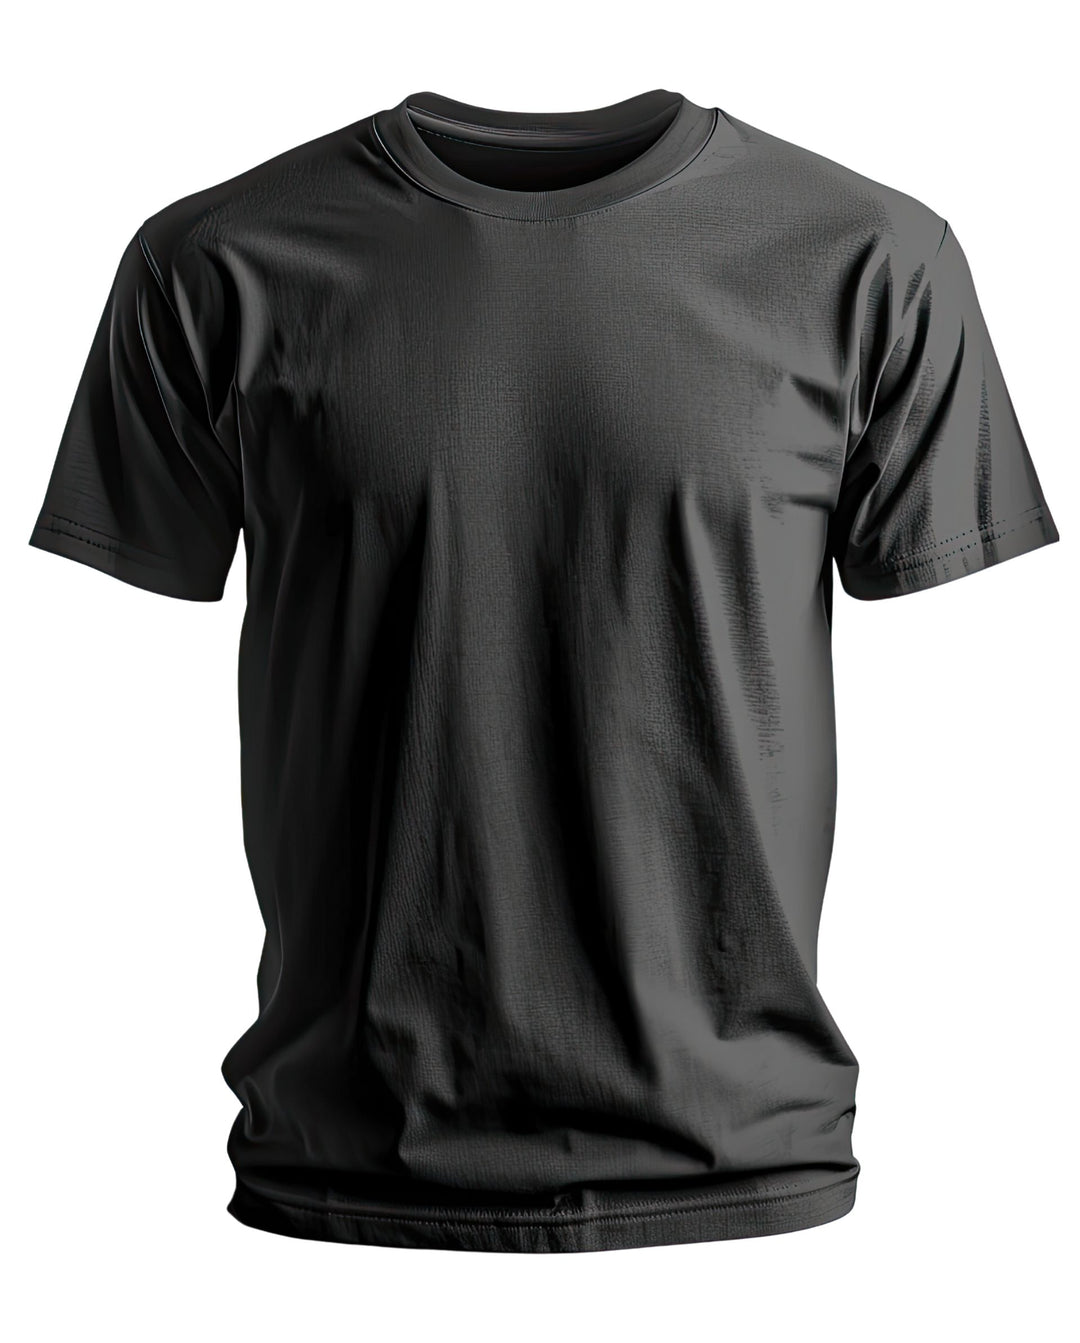 Trinizen Basics Supima Cotton T-shirt